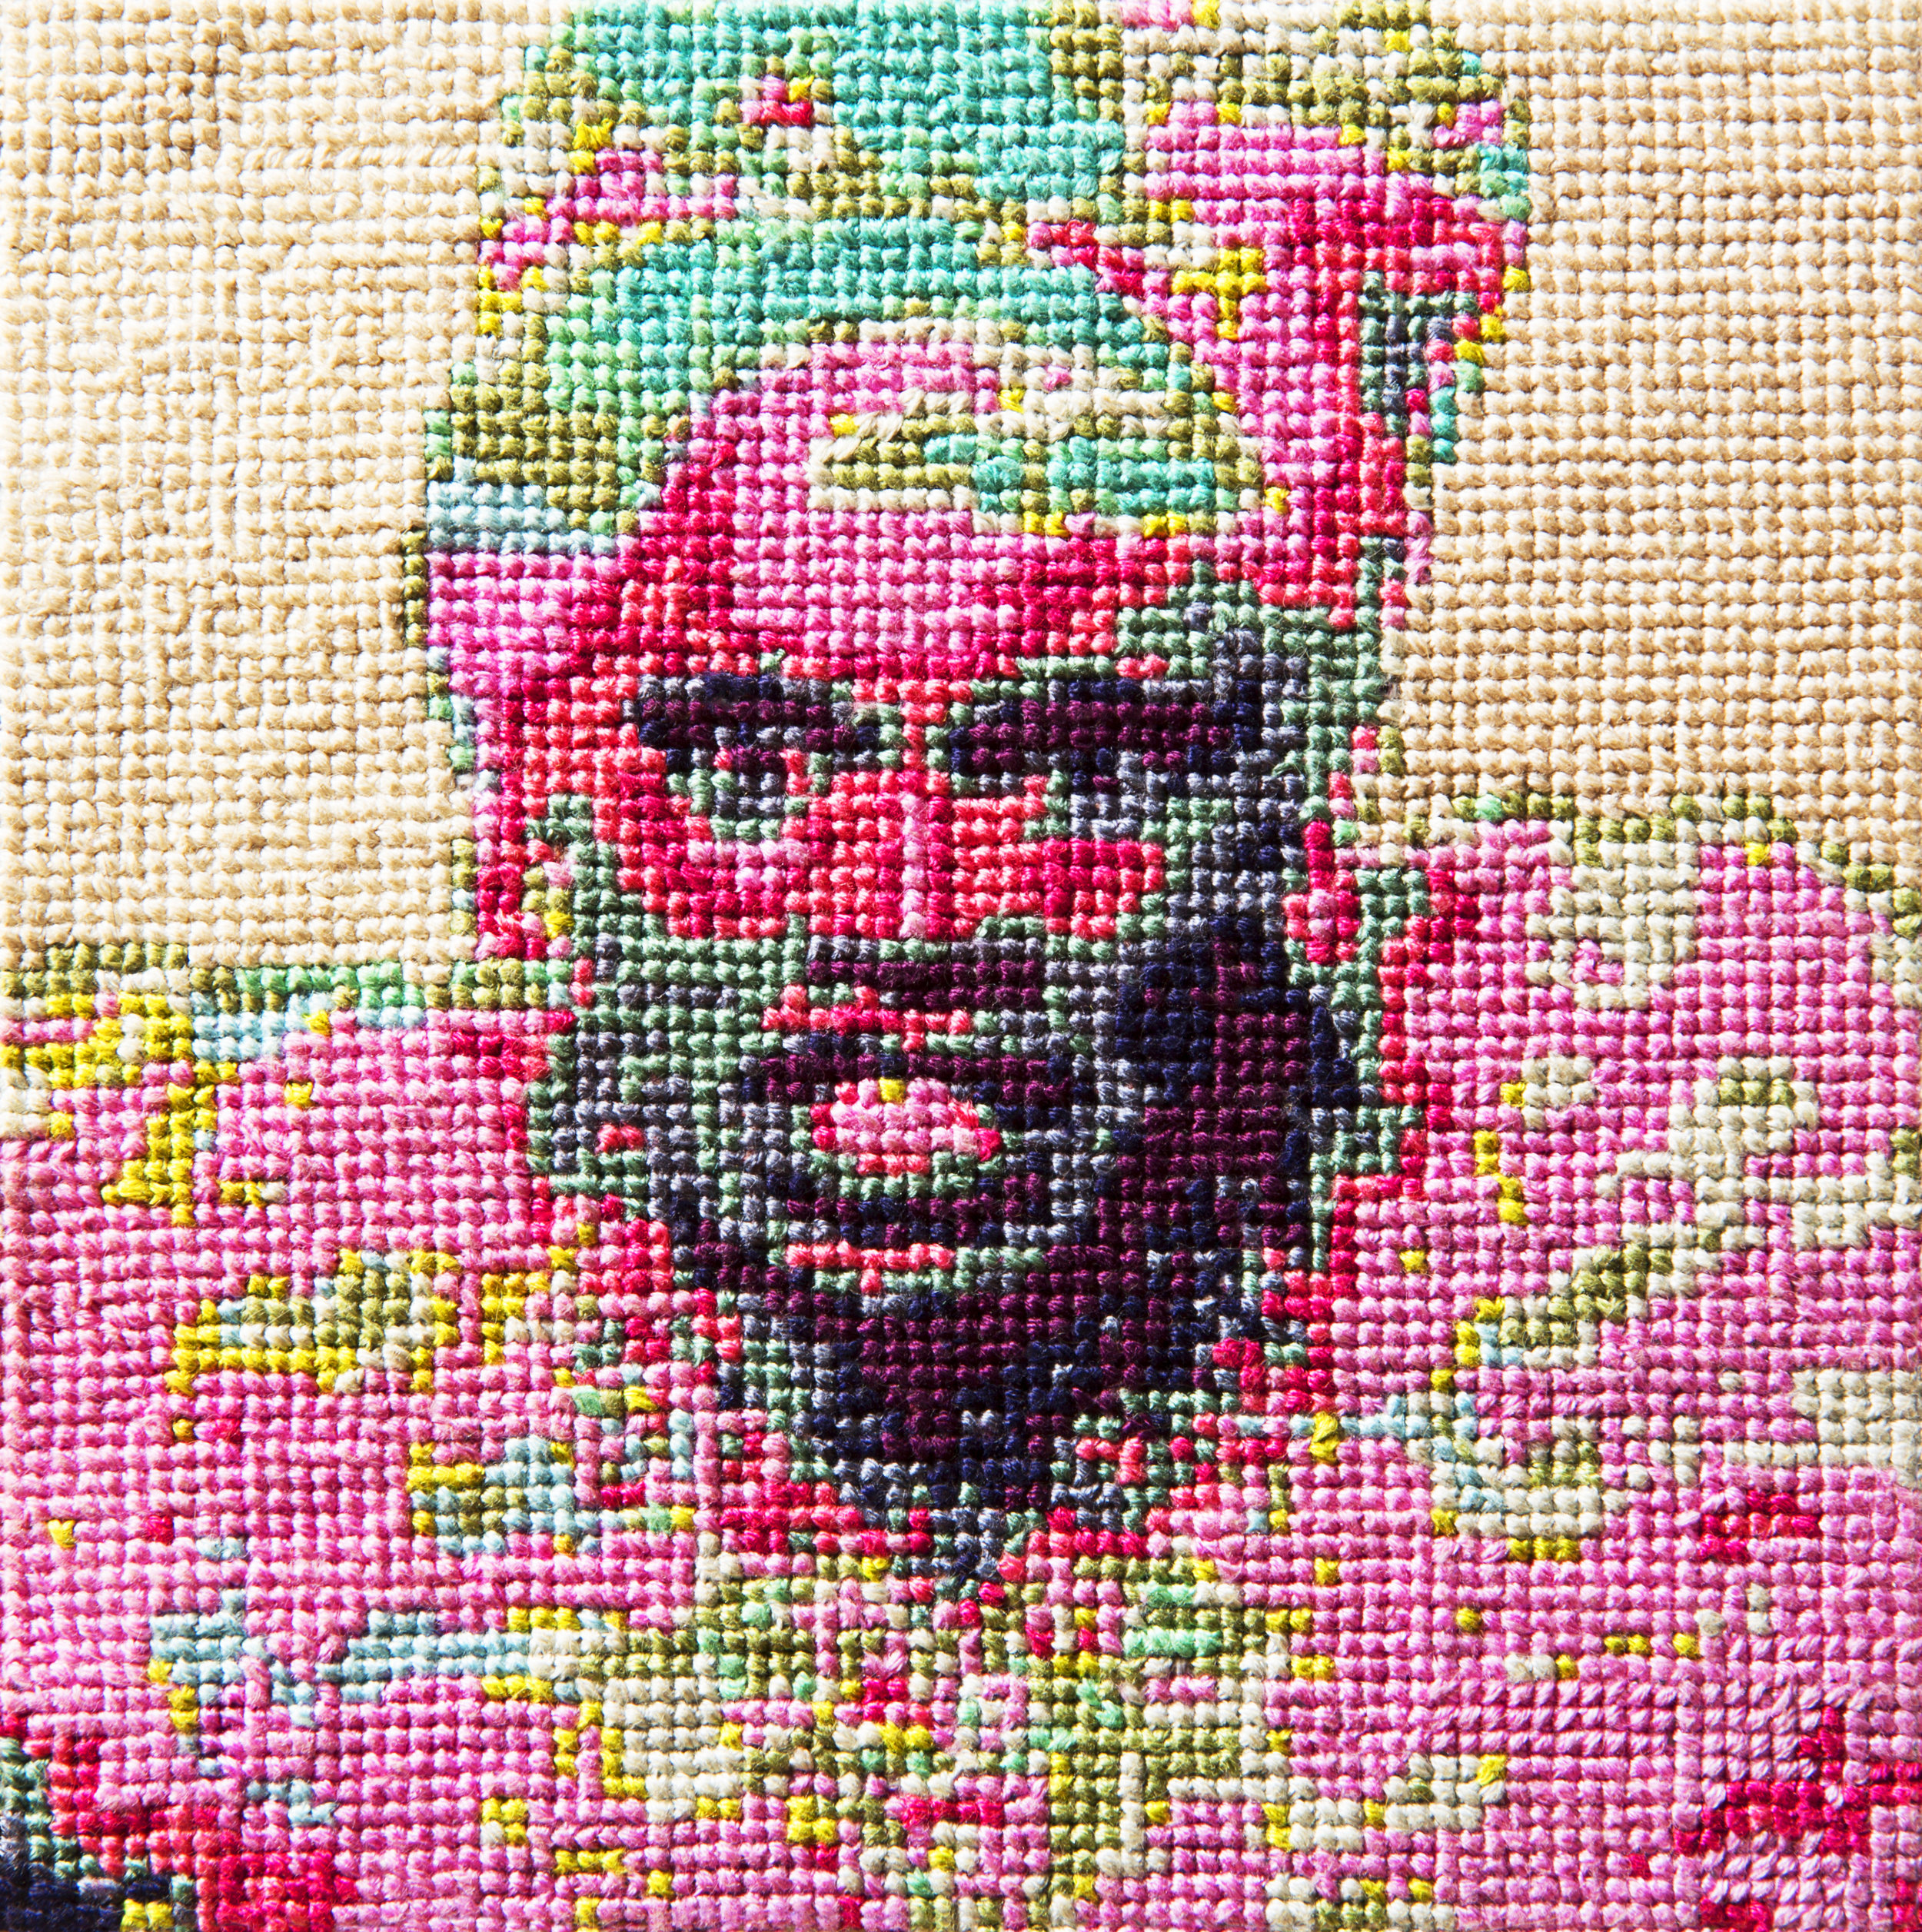   Frame 05   By Elizabeth Yates  5 x 5 inches  Cotton thread on aida cloth  2013 